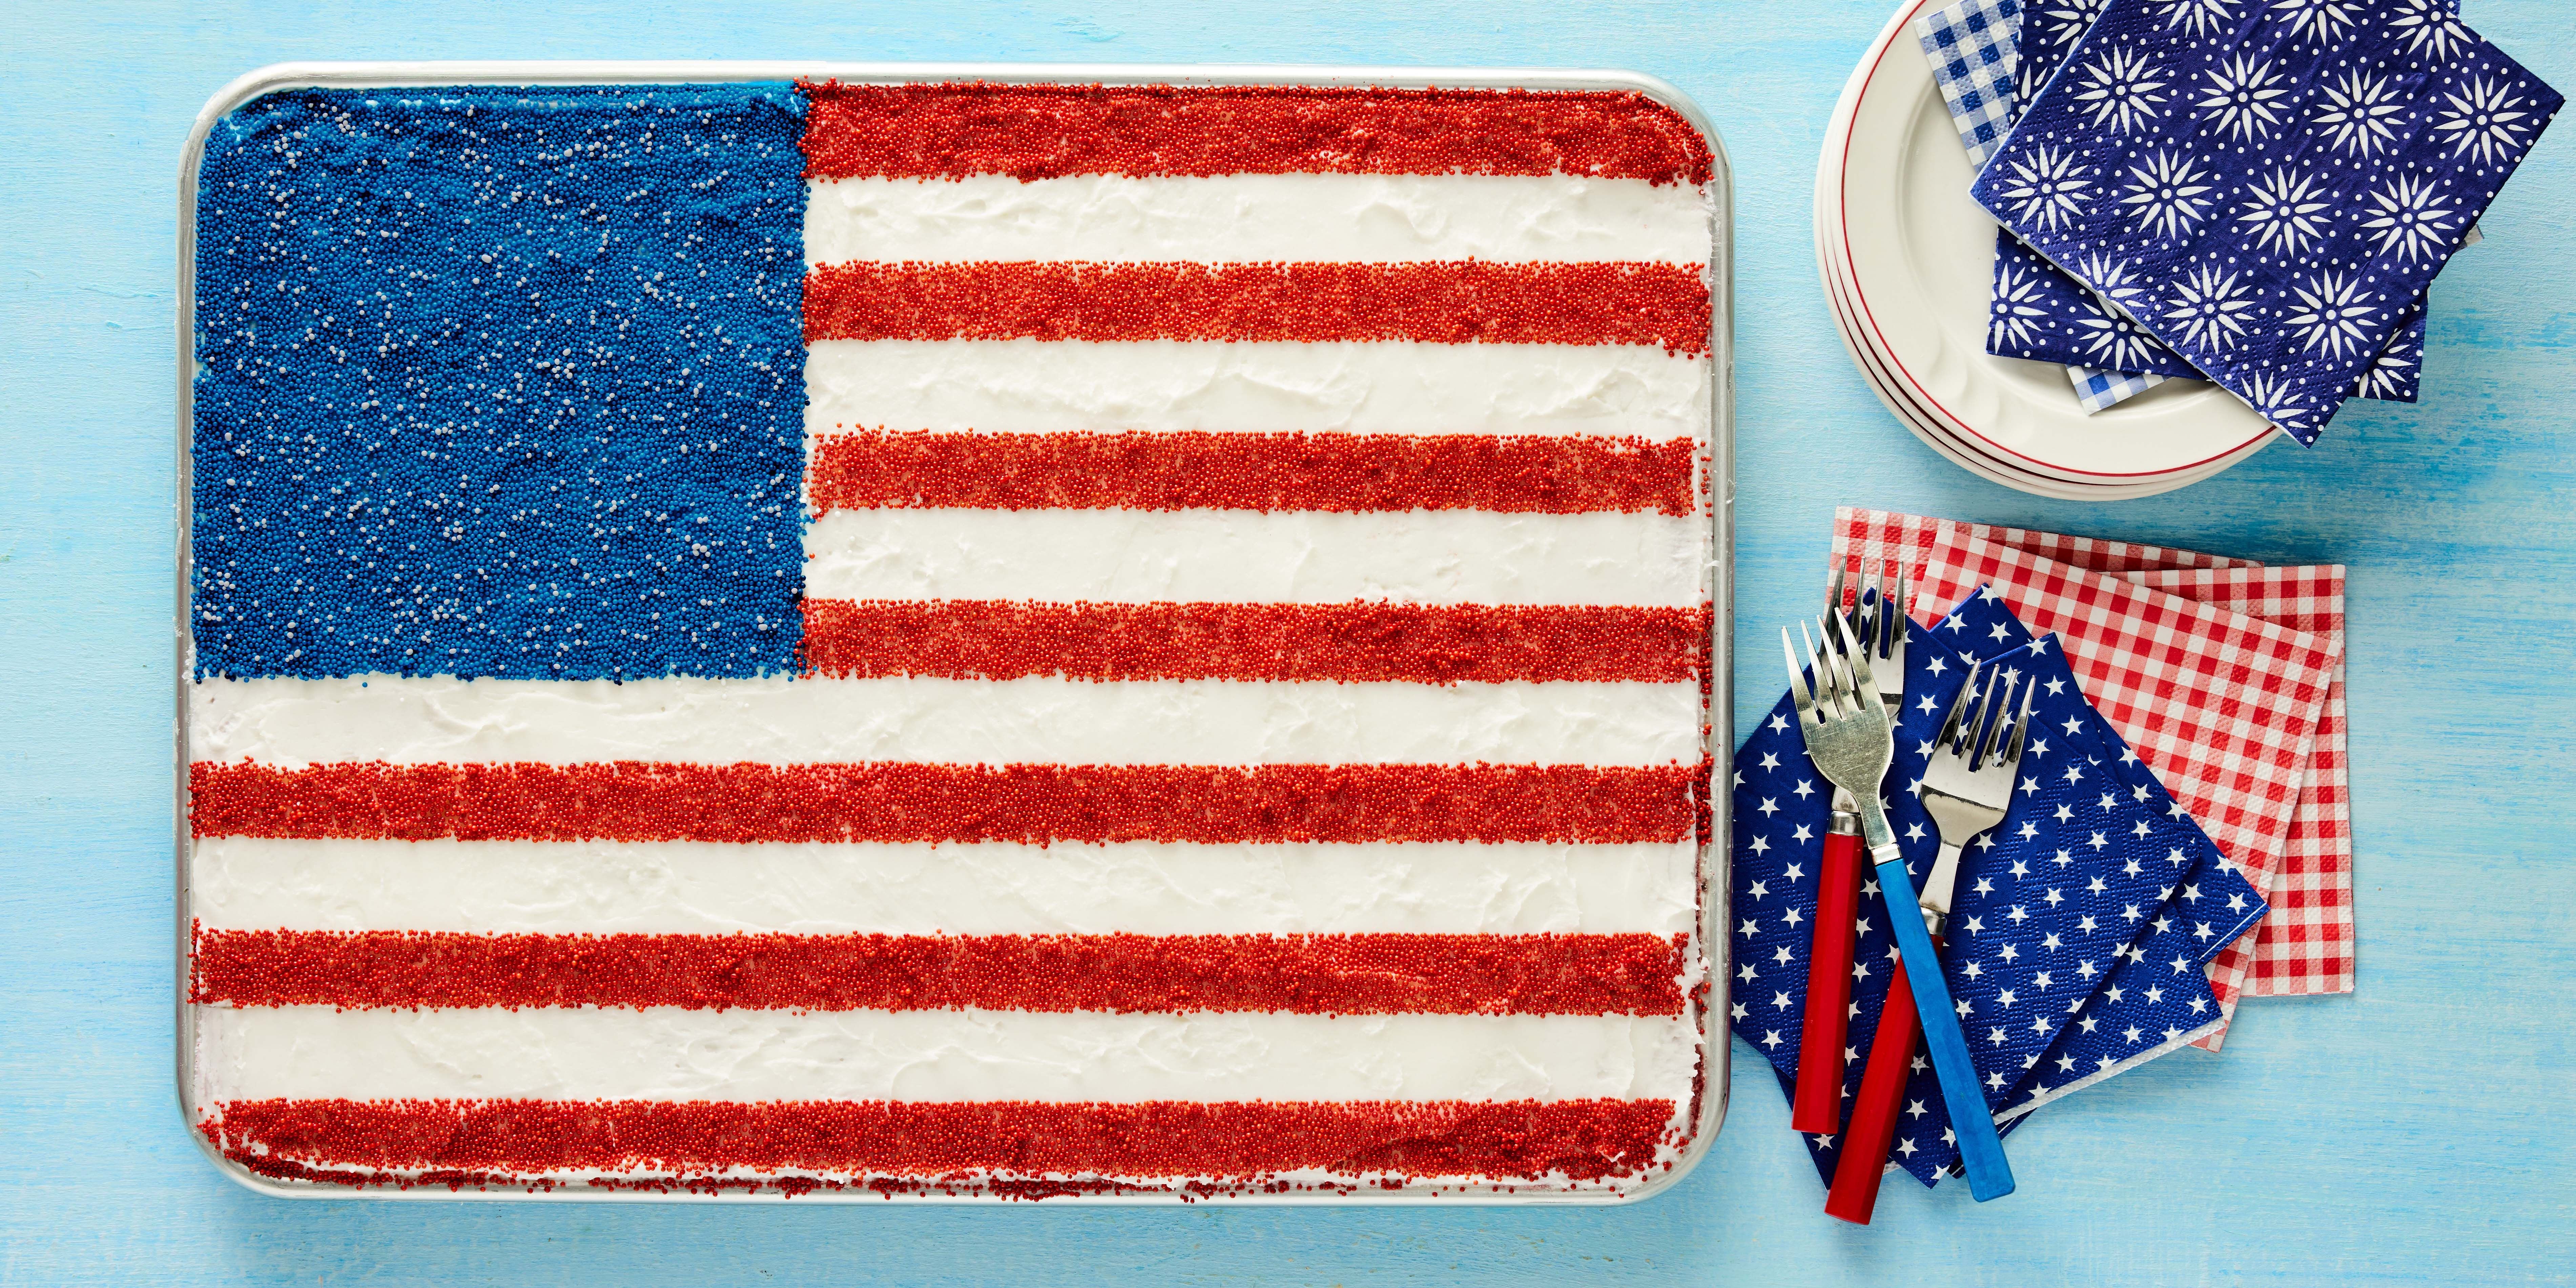 Share 65+ united states cake super hot - awesomeenglish.edu.vn